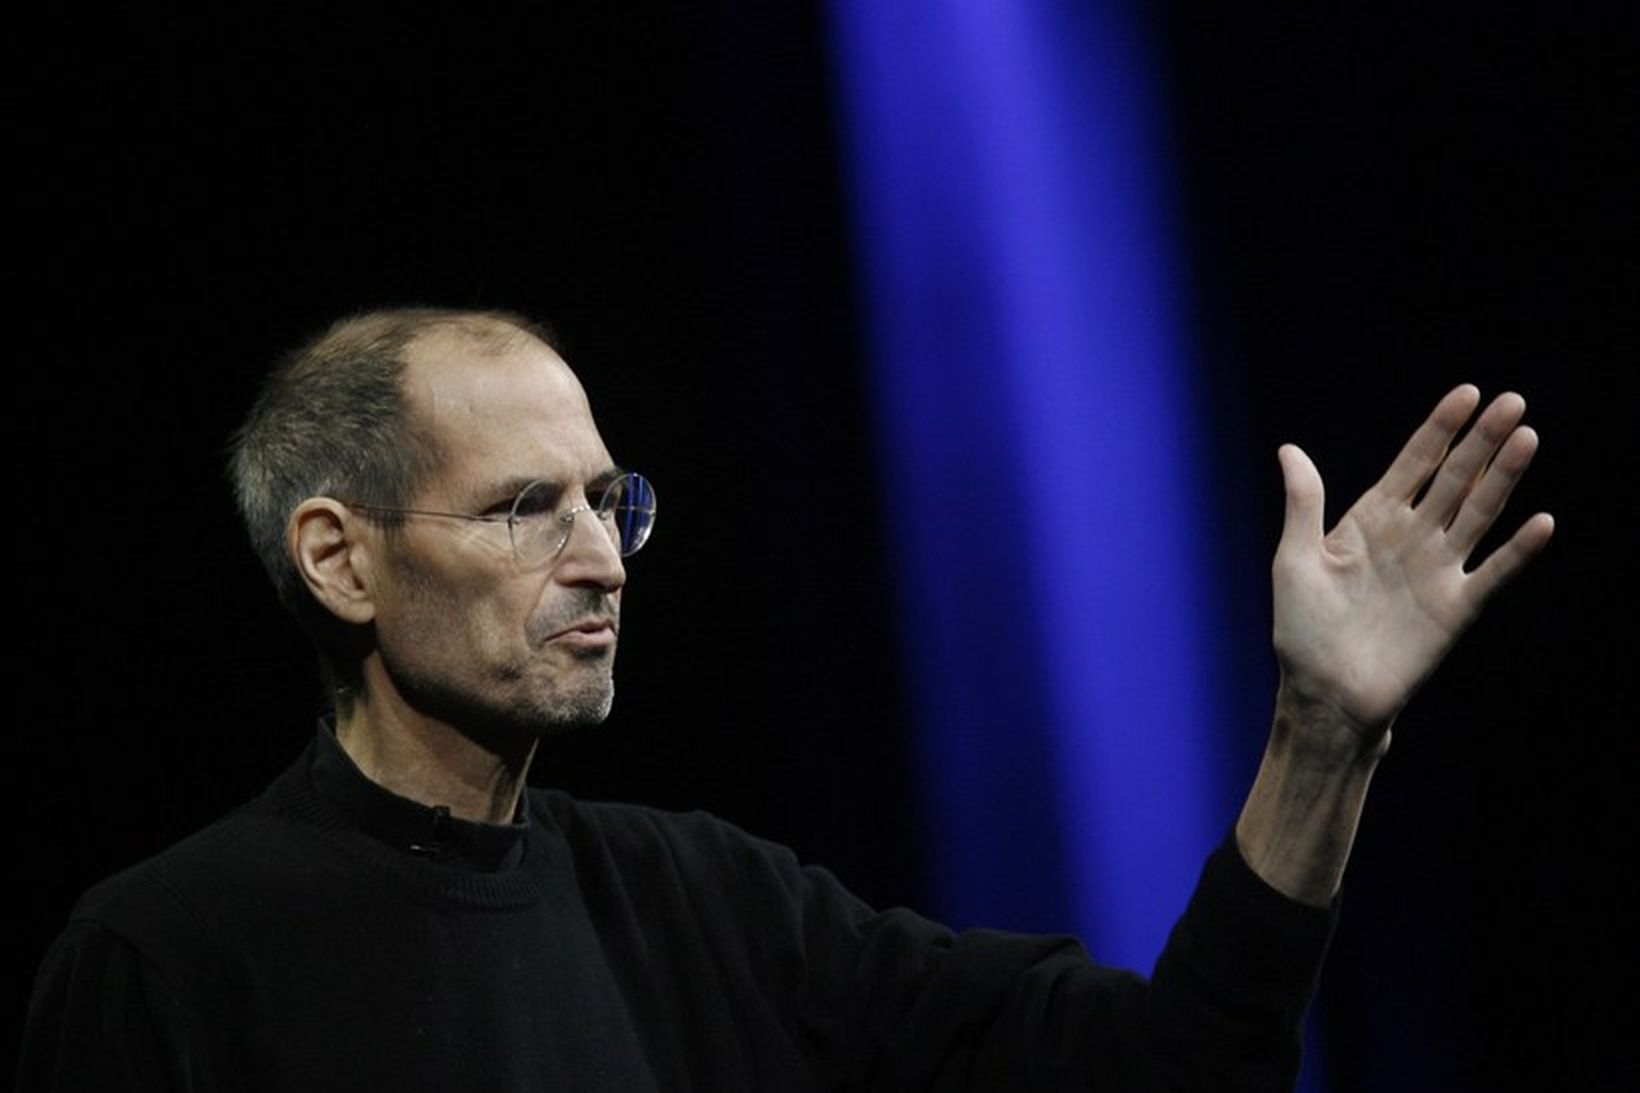 Steve Jobs var gáfaður maður.